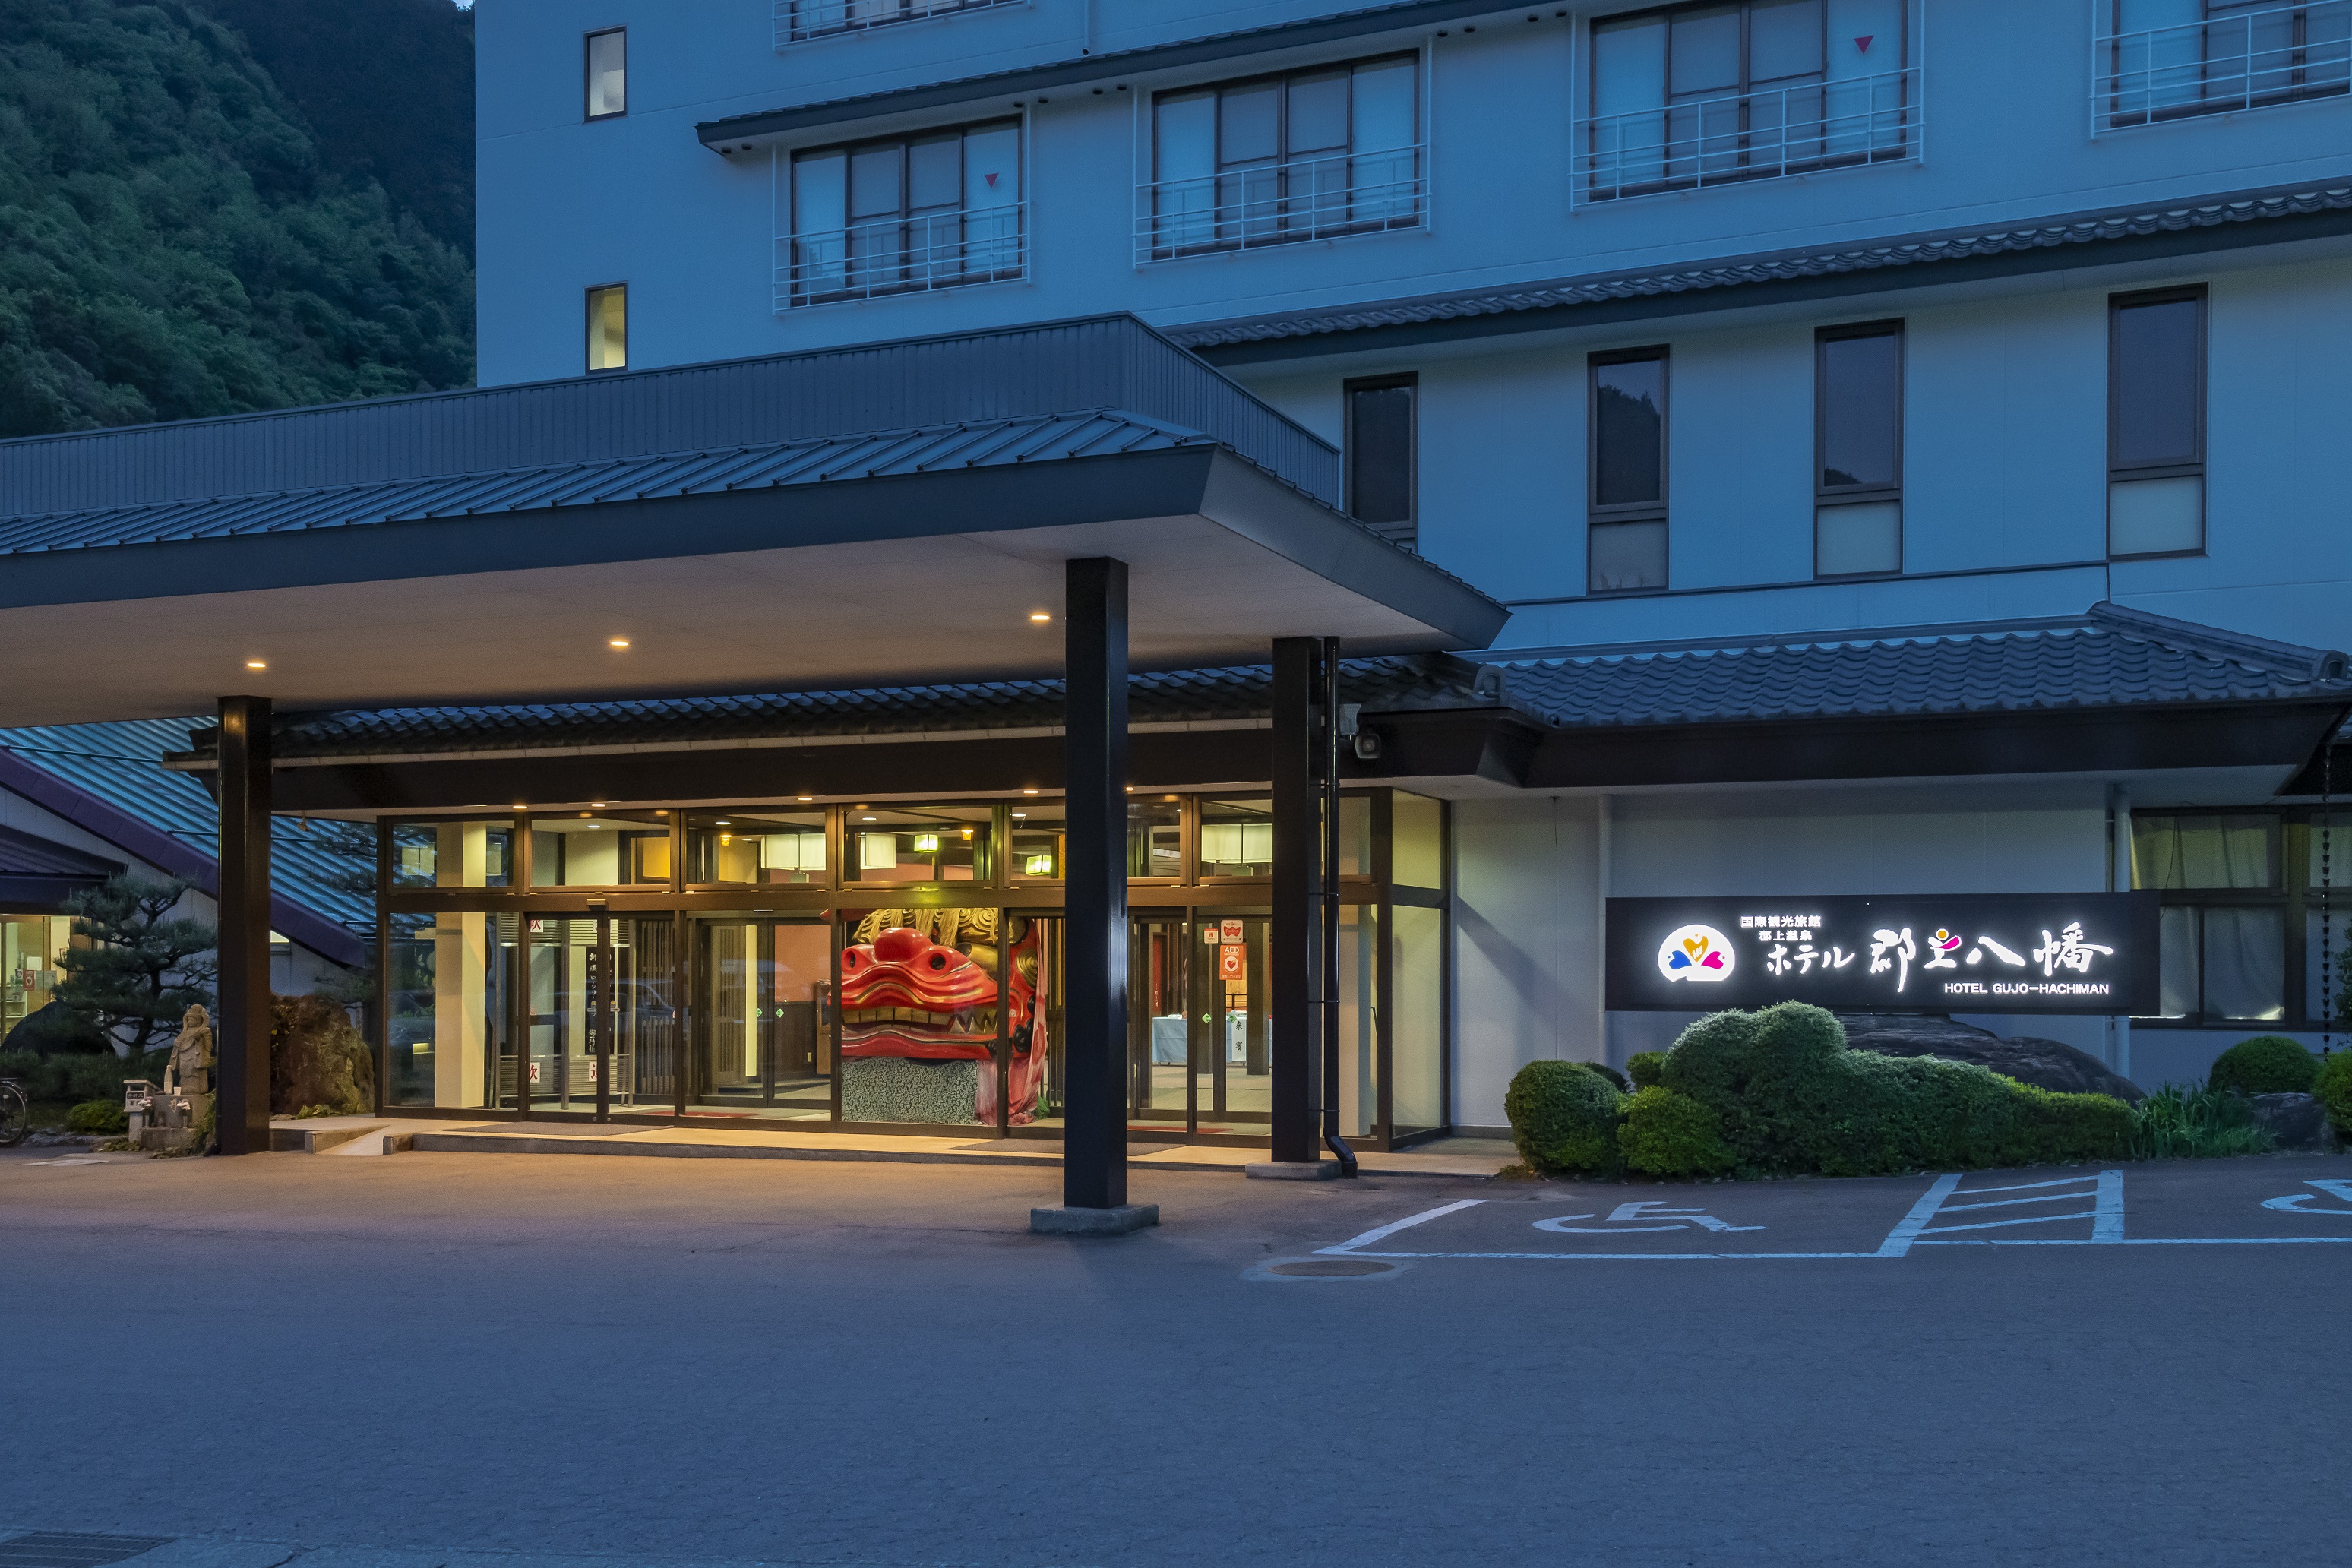 【岐阜県】ほっと一息、ぎふの旅対象のおすすめホテル